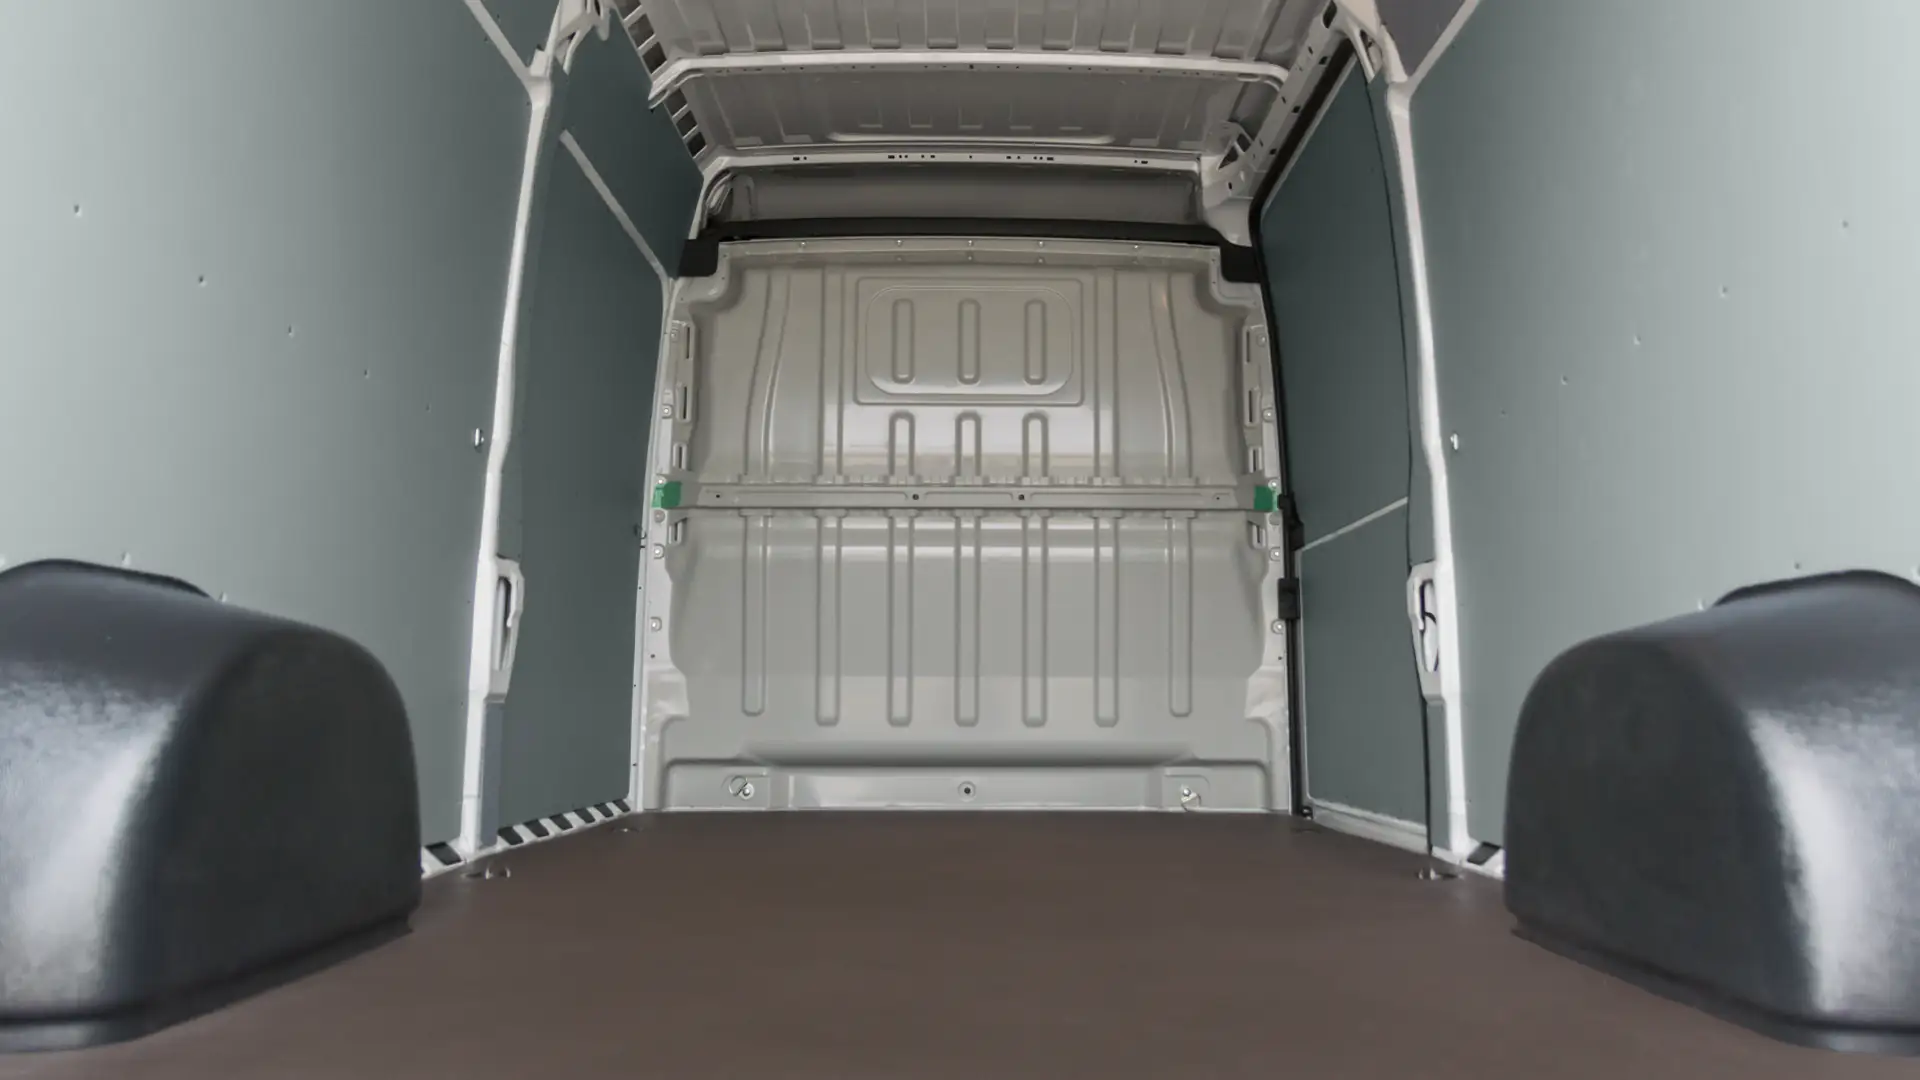 Podłoga i zabudowa przestrzeni ładunkowej z tworzywa sztucznego PP w samochodzie Peugeot Boxer.